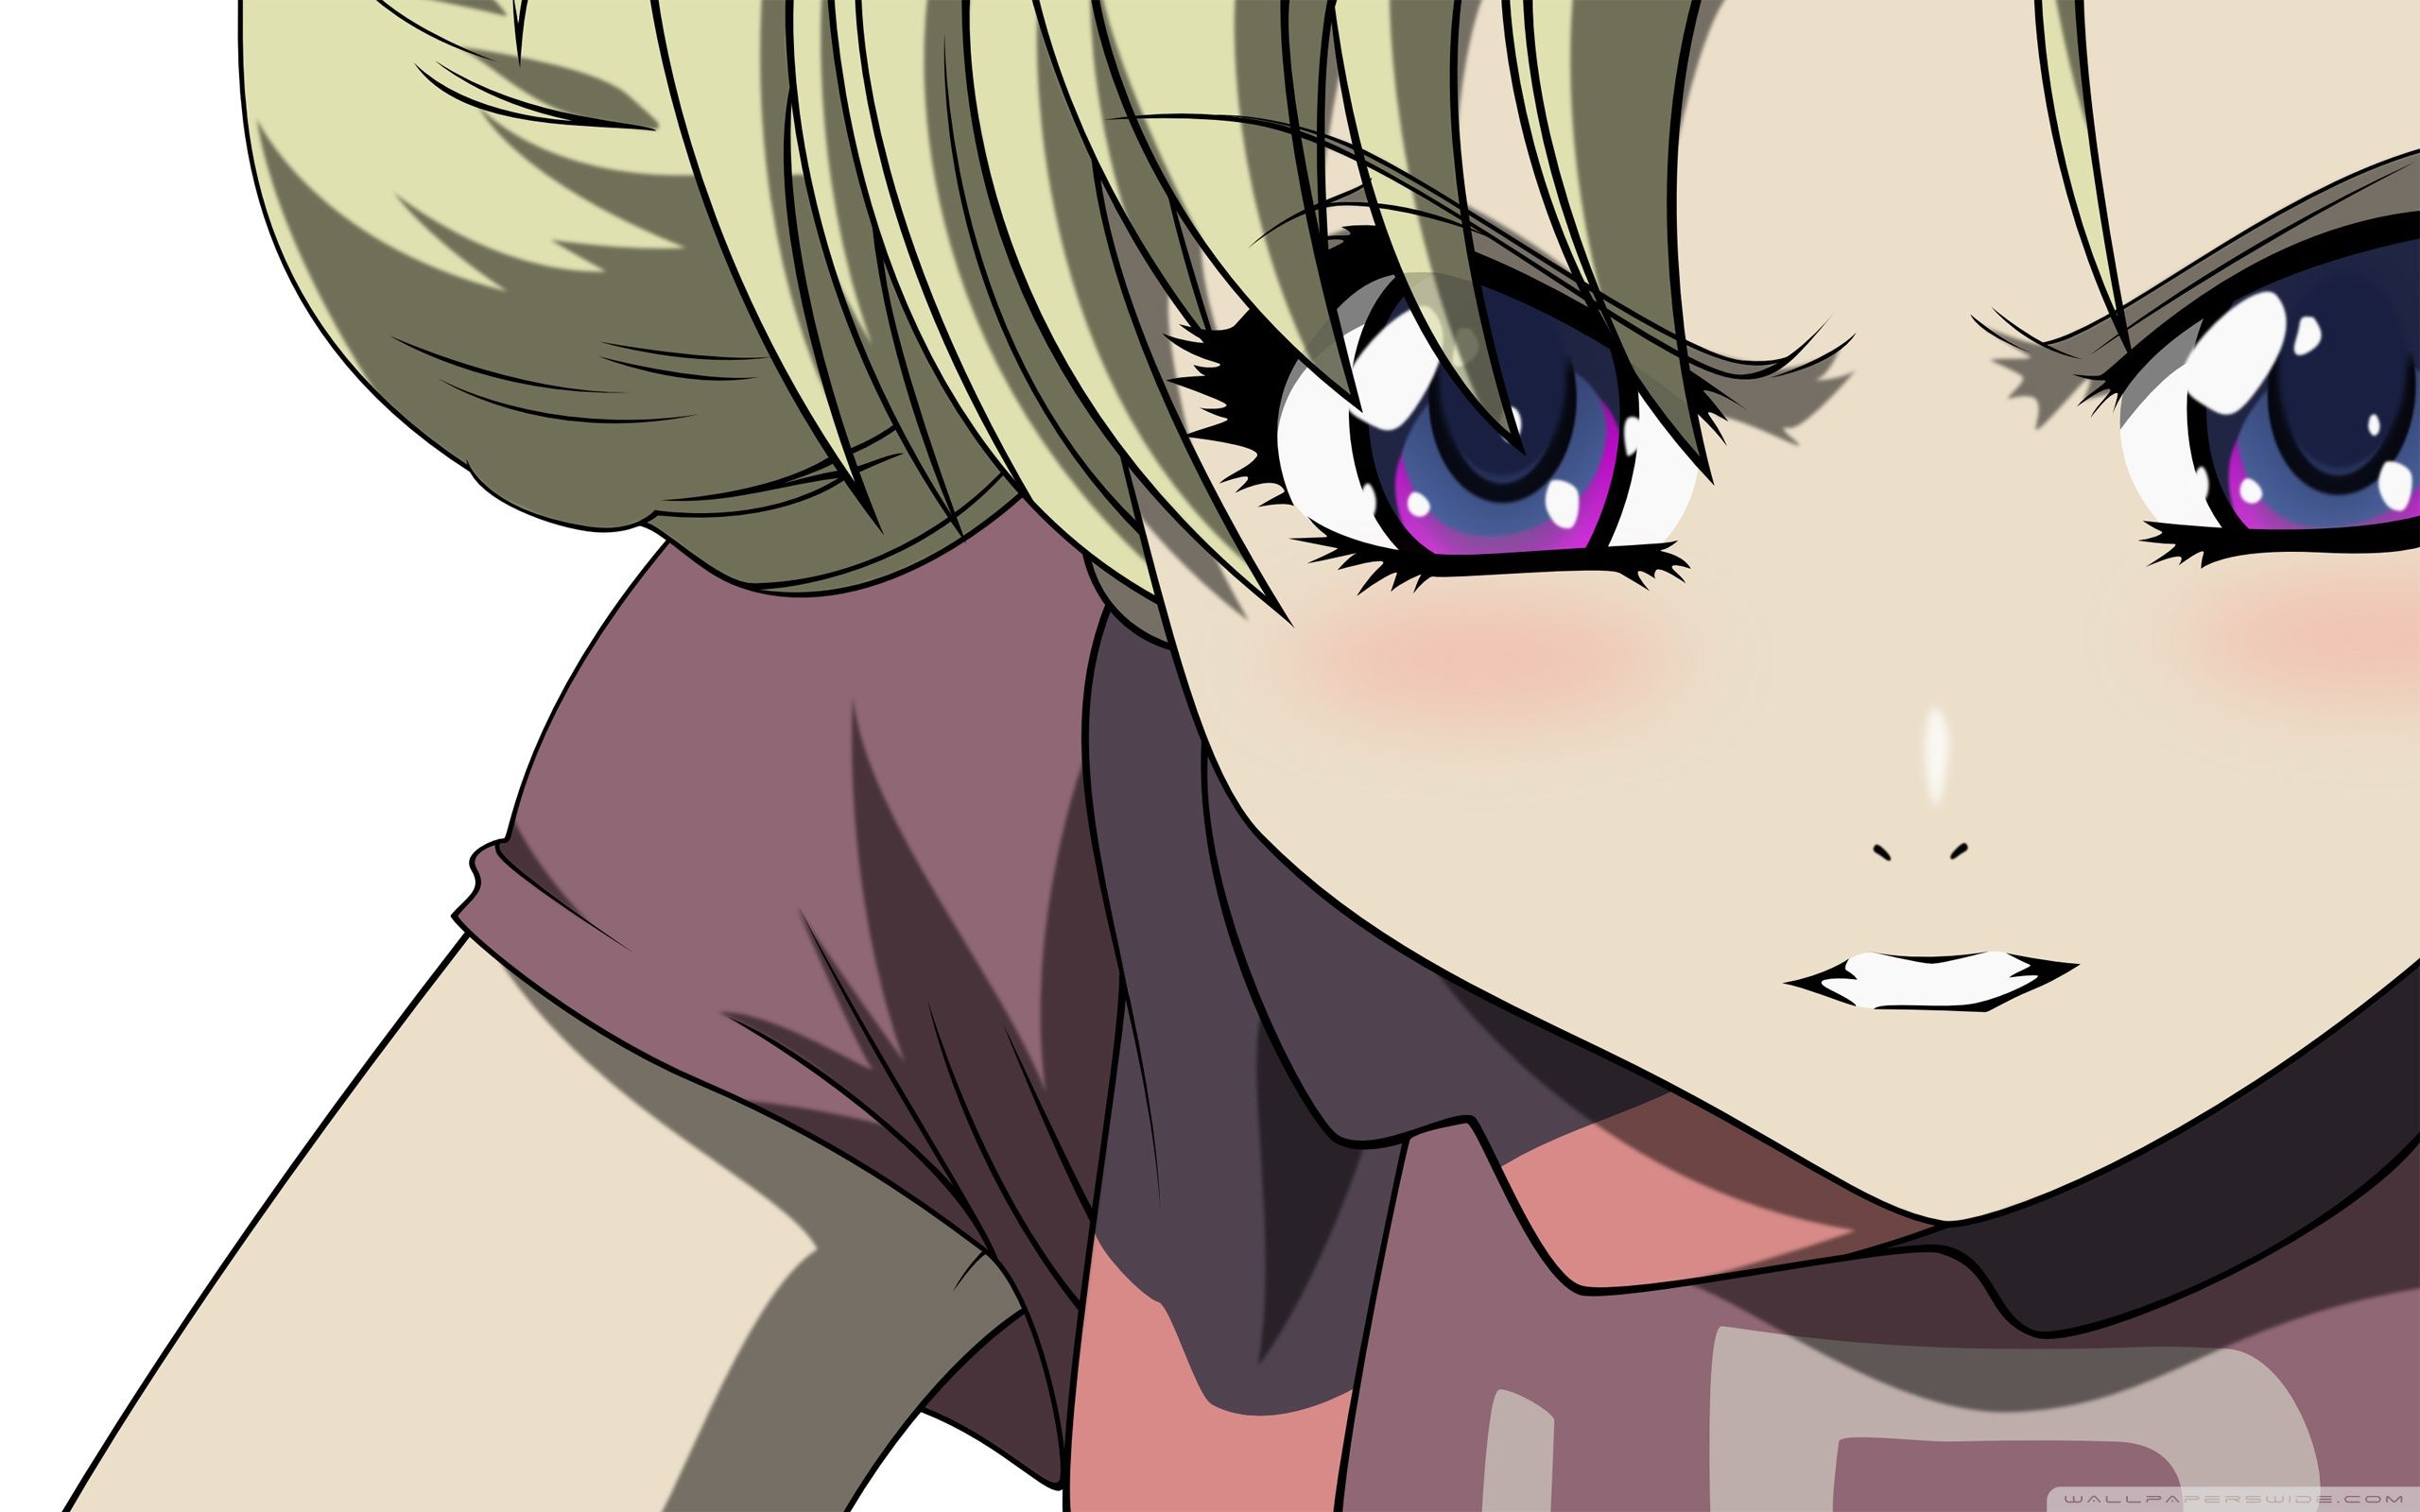 Angry Girl Anime Ultra HD Desktop Background Wallpaper for 4K UHD TV, Tablet